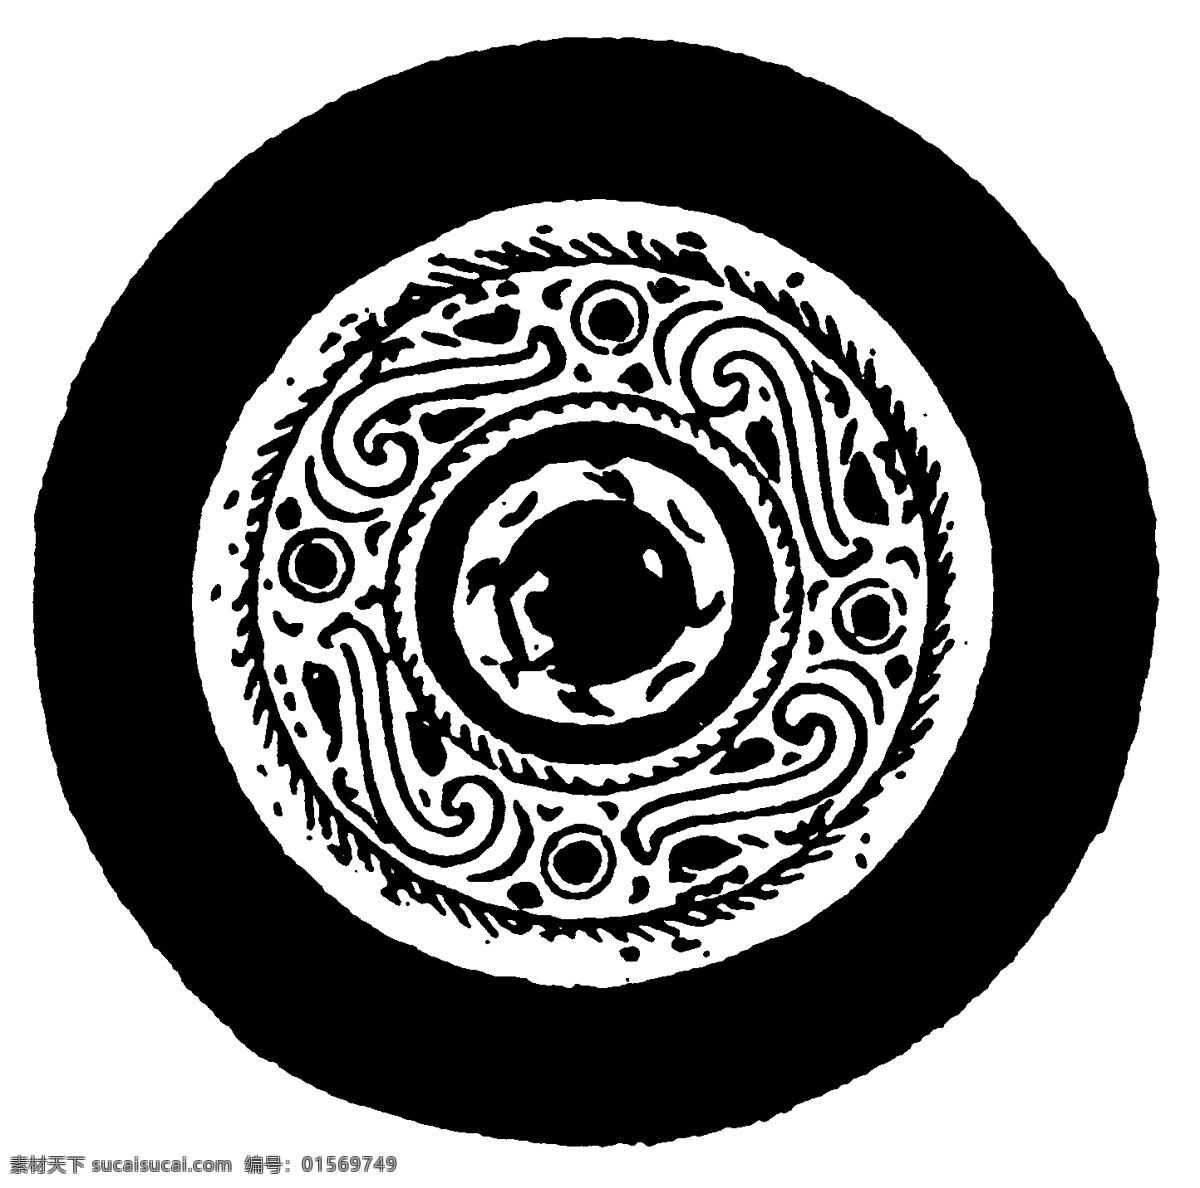 瓦当图案 秦汉时期图案 中国传统图案 图案024 图案 设计素材 瓦当纹饰 装饰图案 书画美术 黑色